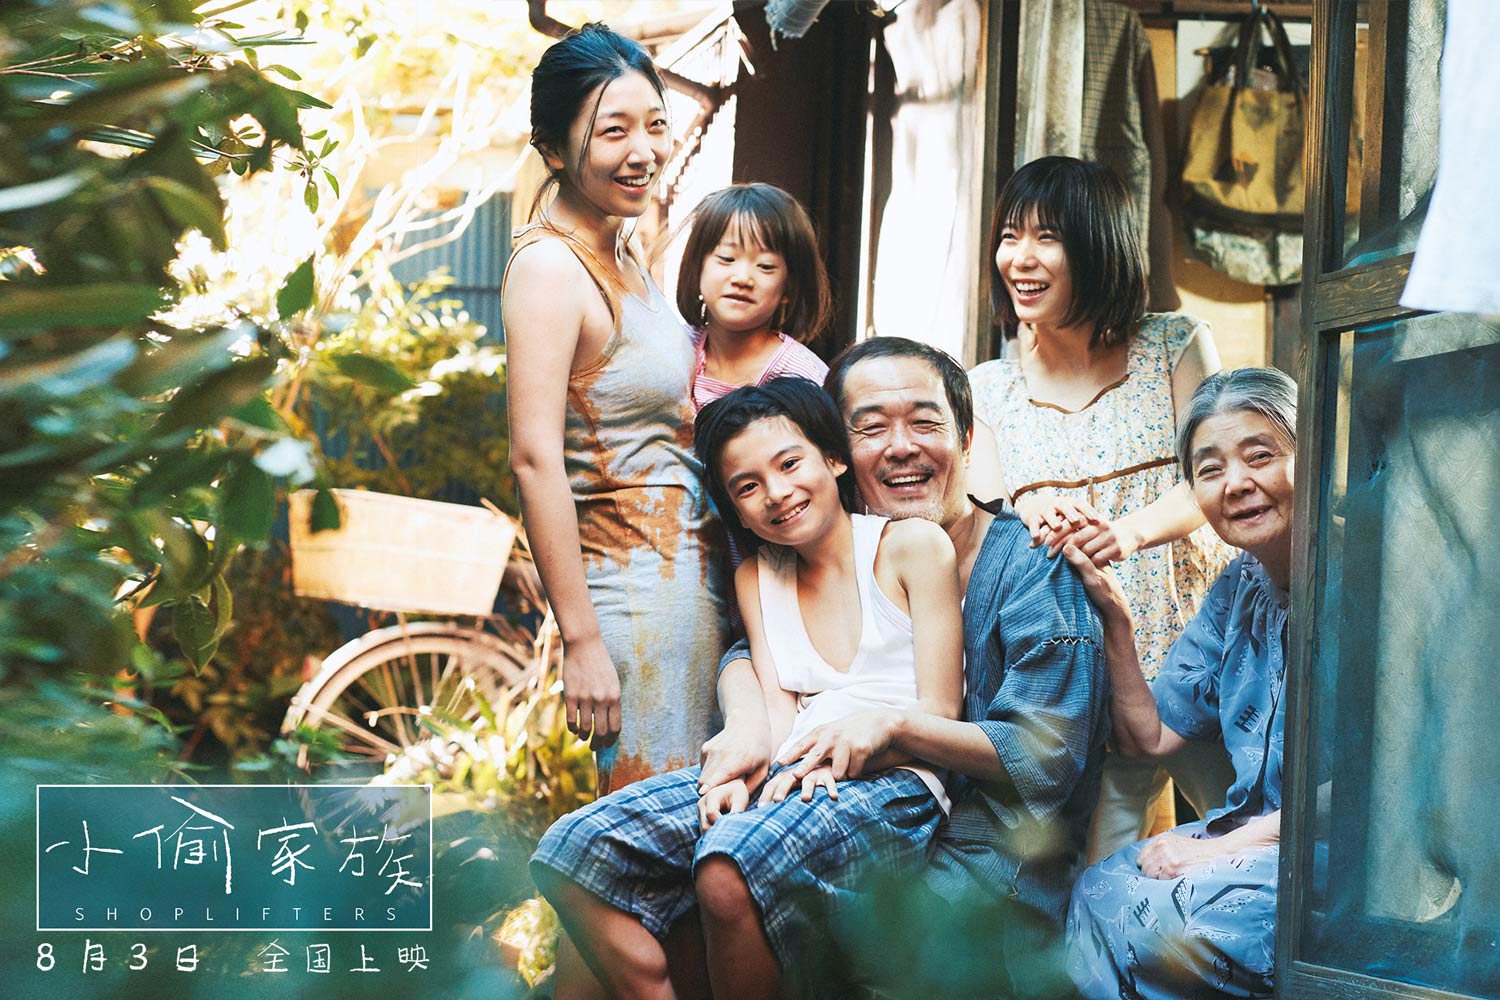 抢票丨日本电影《小偷家族》全国免费抢票